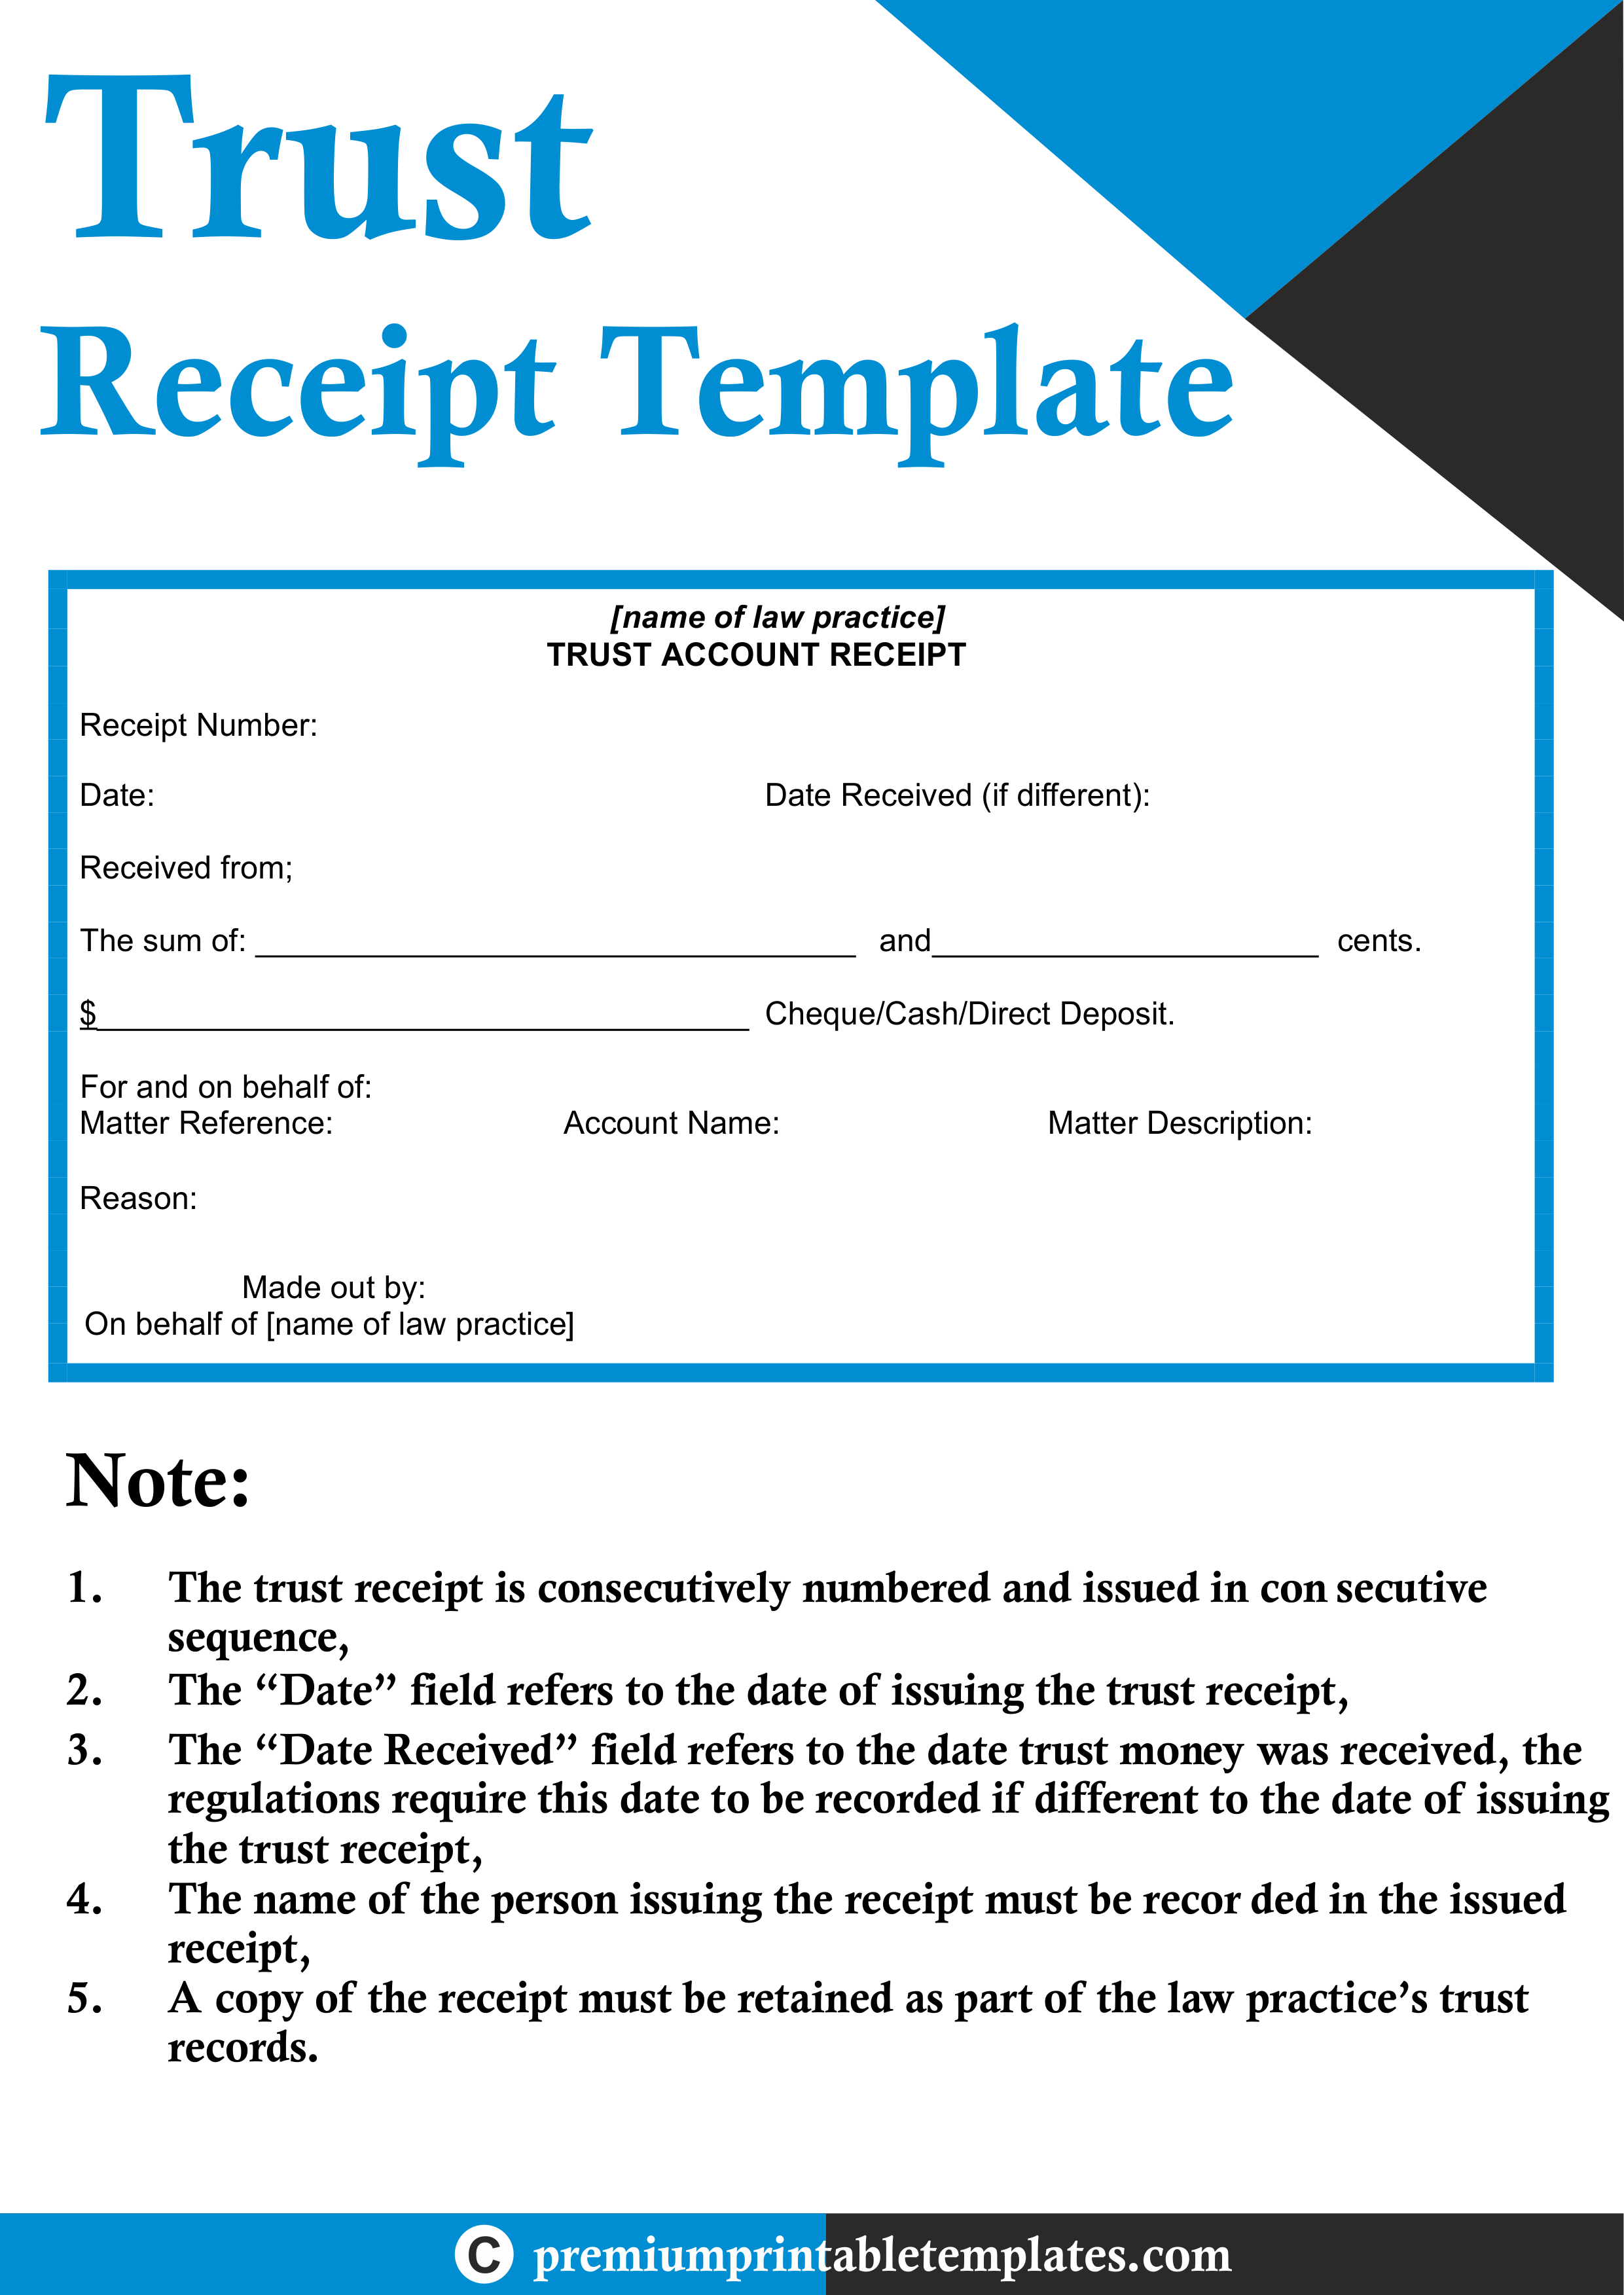 Trust Receipt Template Premium Printable Templates